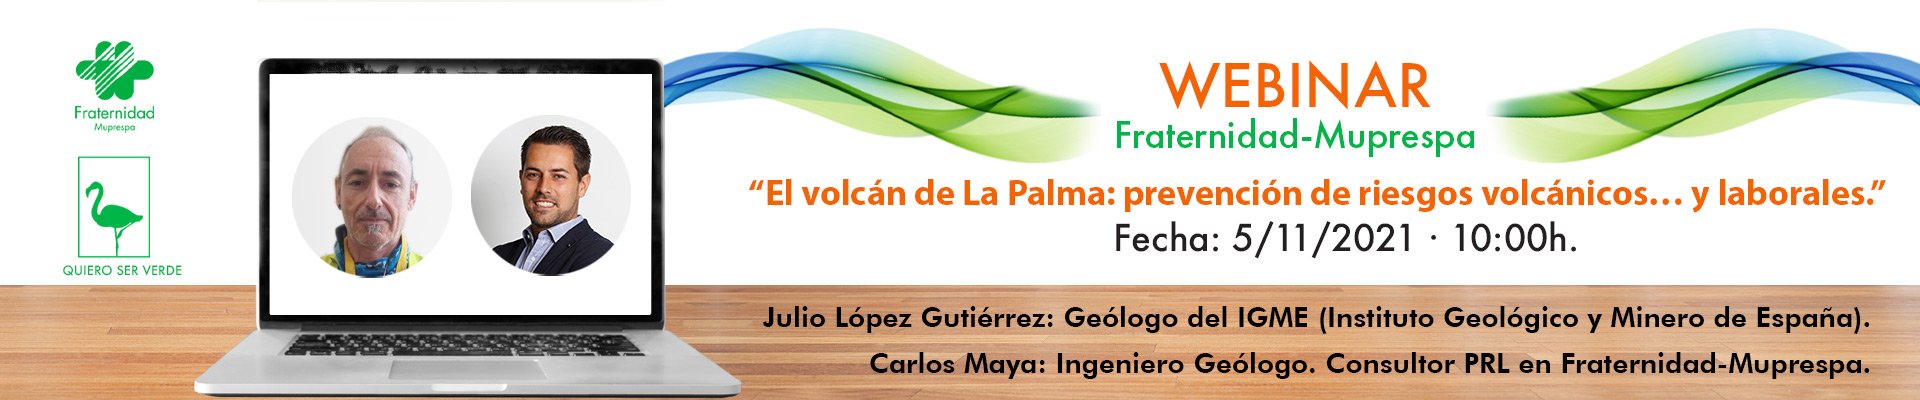 banner-webinar Fraternidad-Muprespa-volcan La Palma